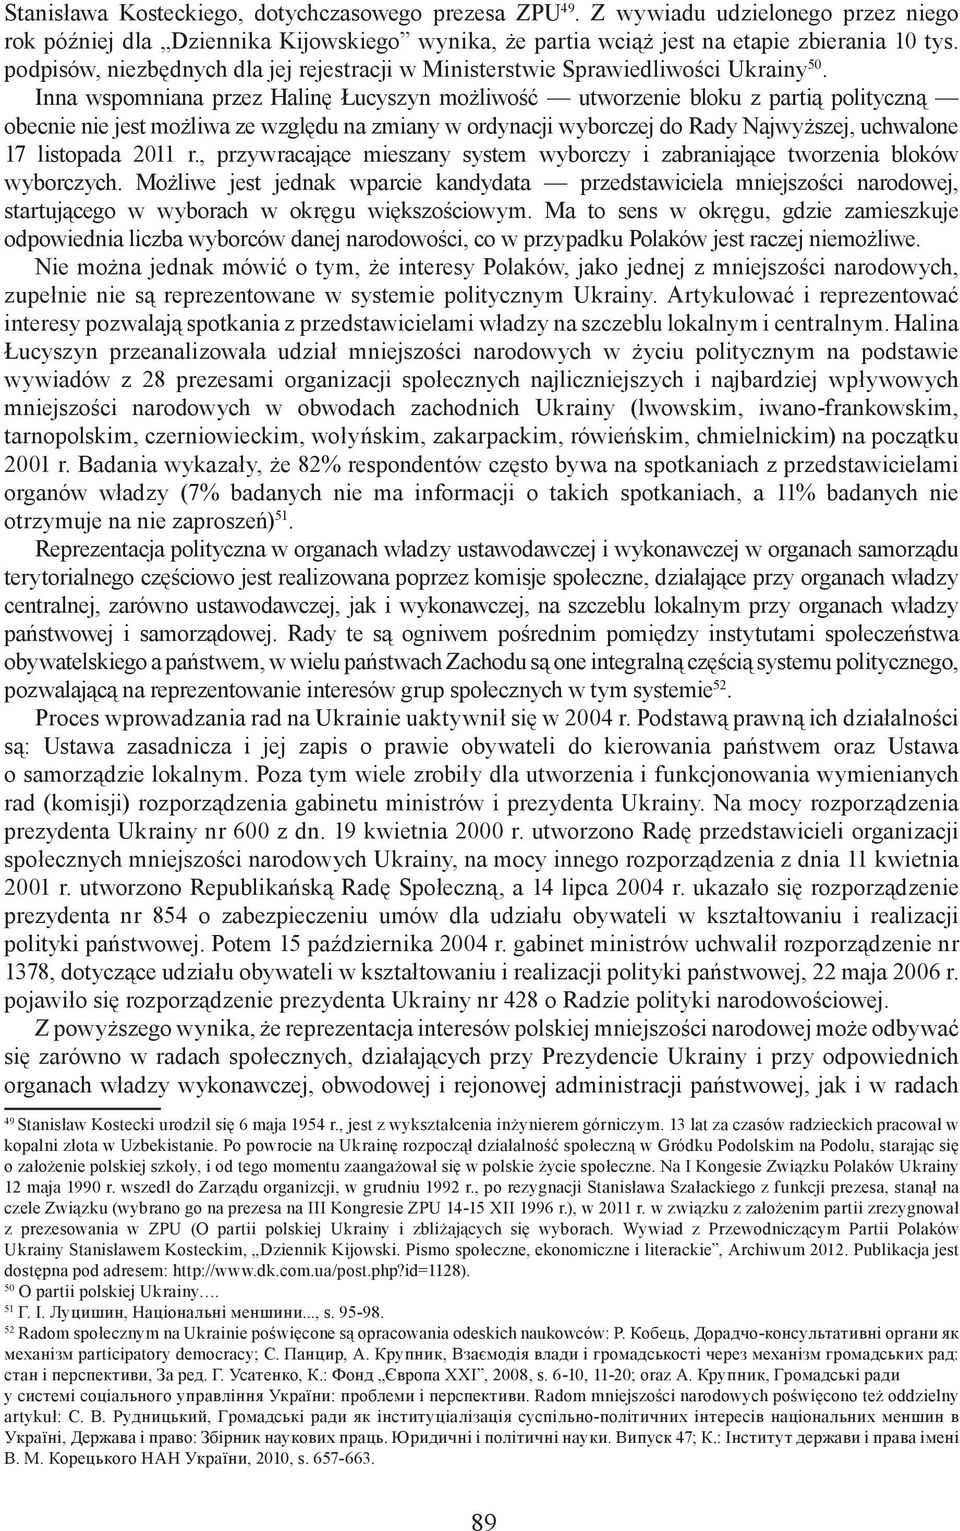 Inna wspomniana przez Halinę Łucyszyn możliwość utworzenie bloku z partią polityczną obecnie nie jest możliwa ze względu na zmiany w ordynacji wyborczej do Rady Najwyższej, uchwalone 17 listopada